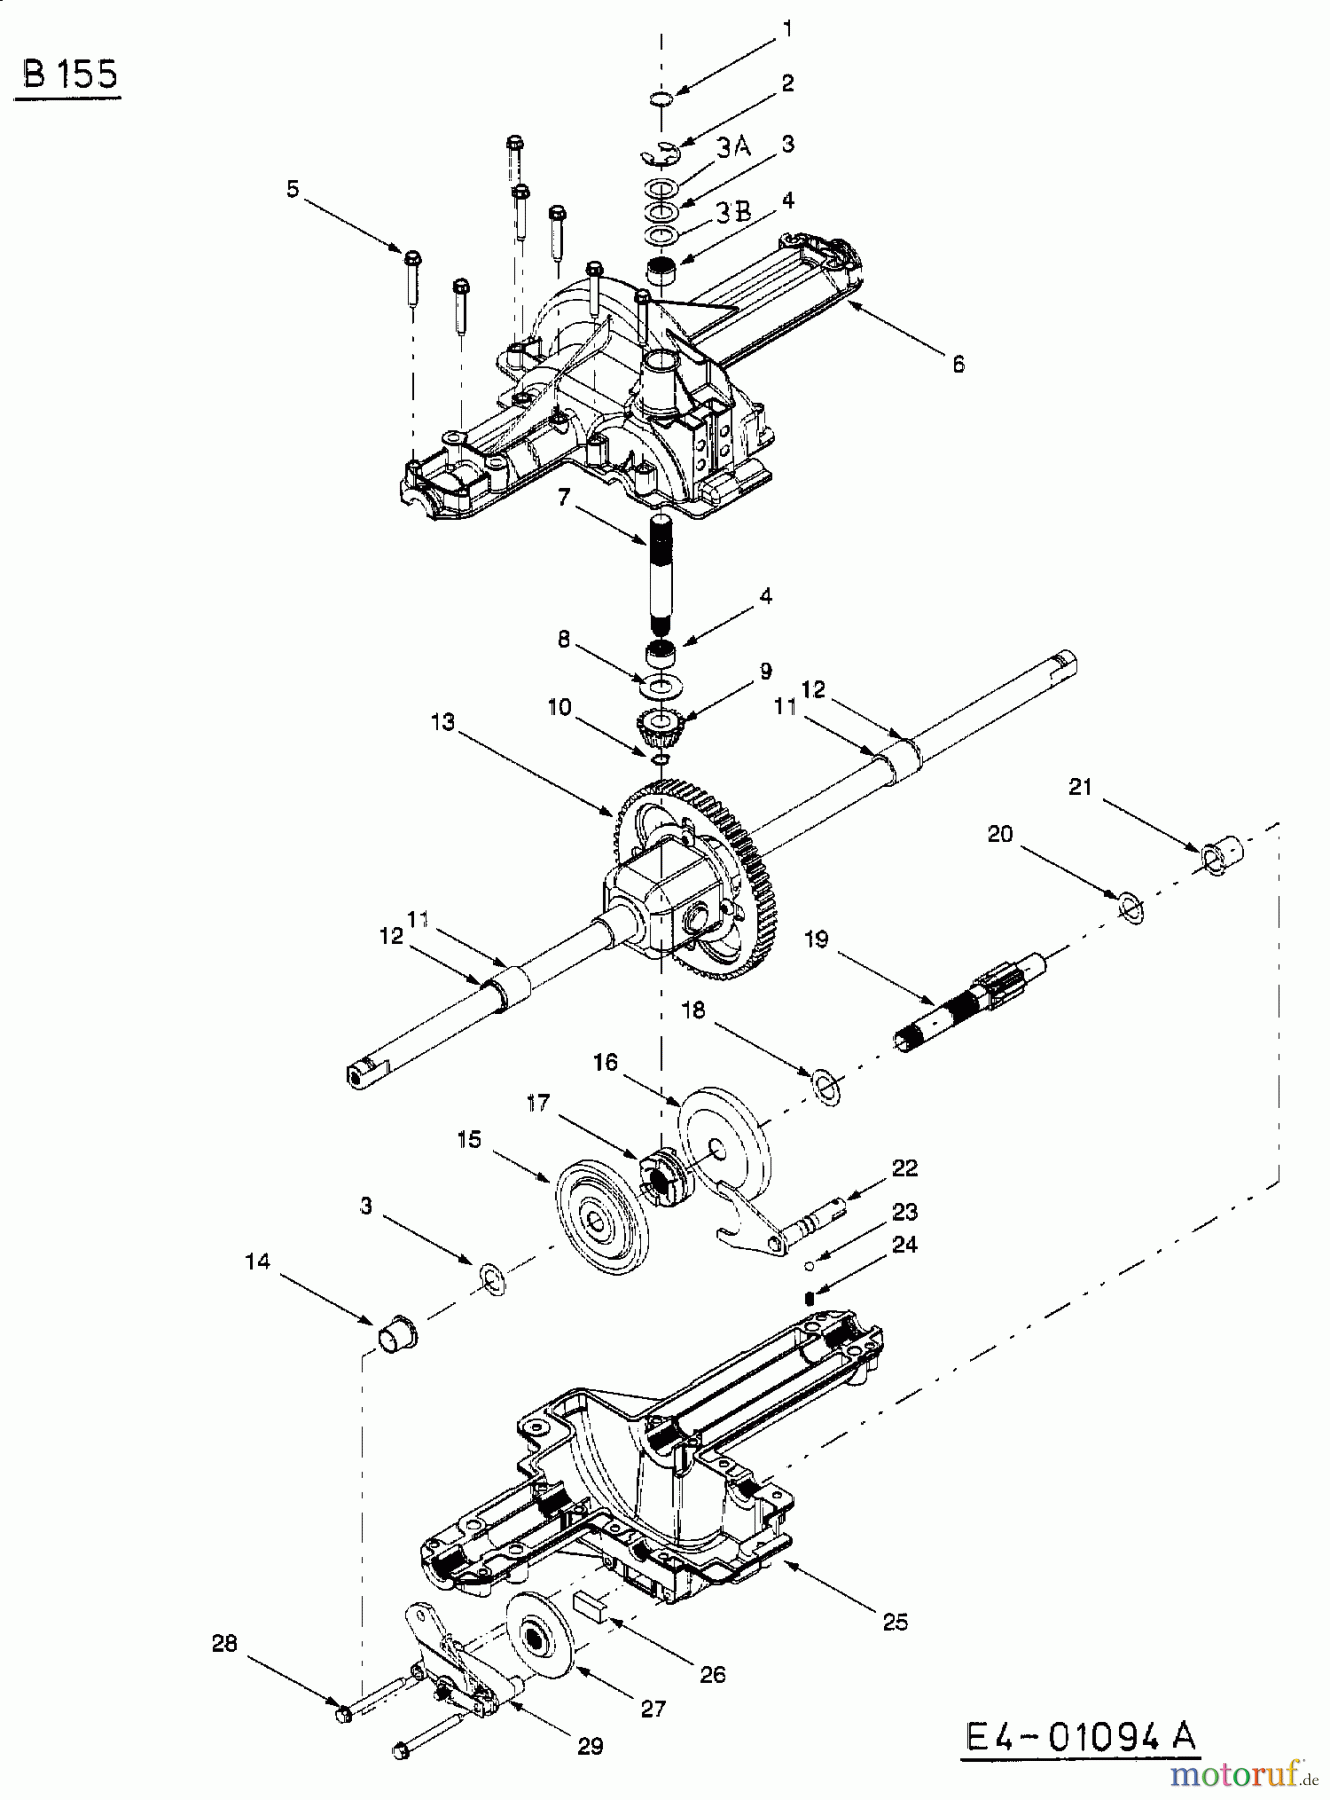  Mastercut Rasentraktoren VI 145/107 13AA685G659  (2003) Getriebe